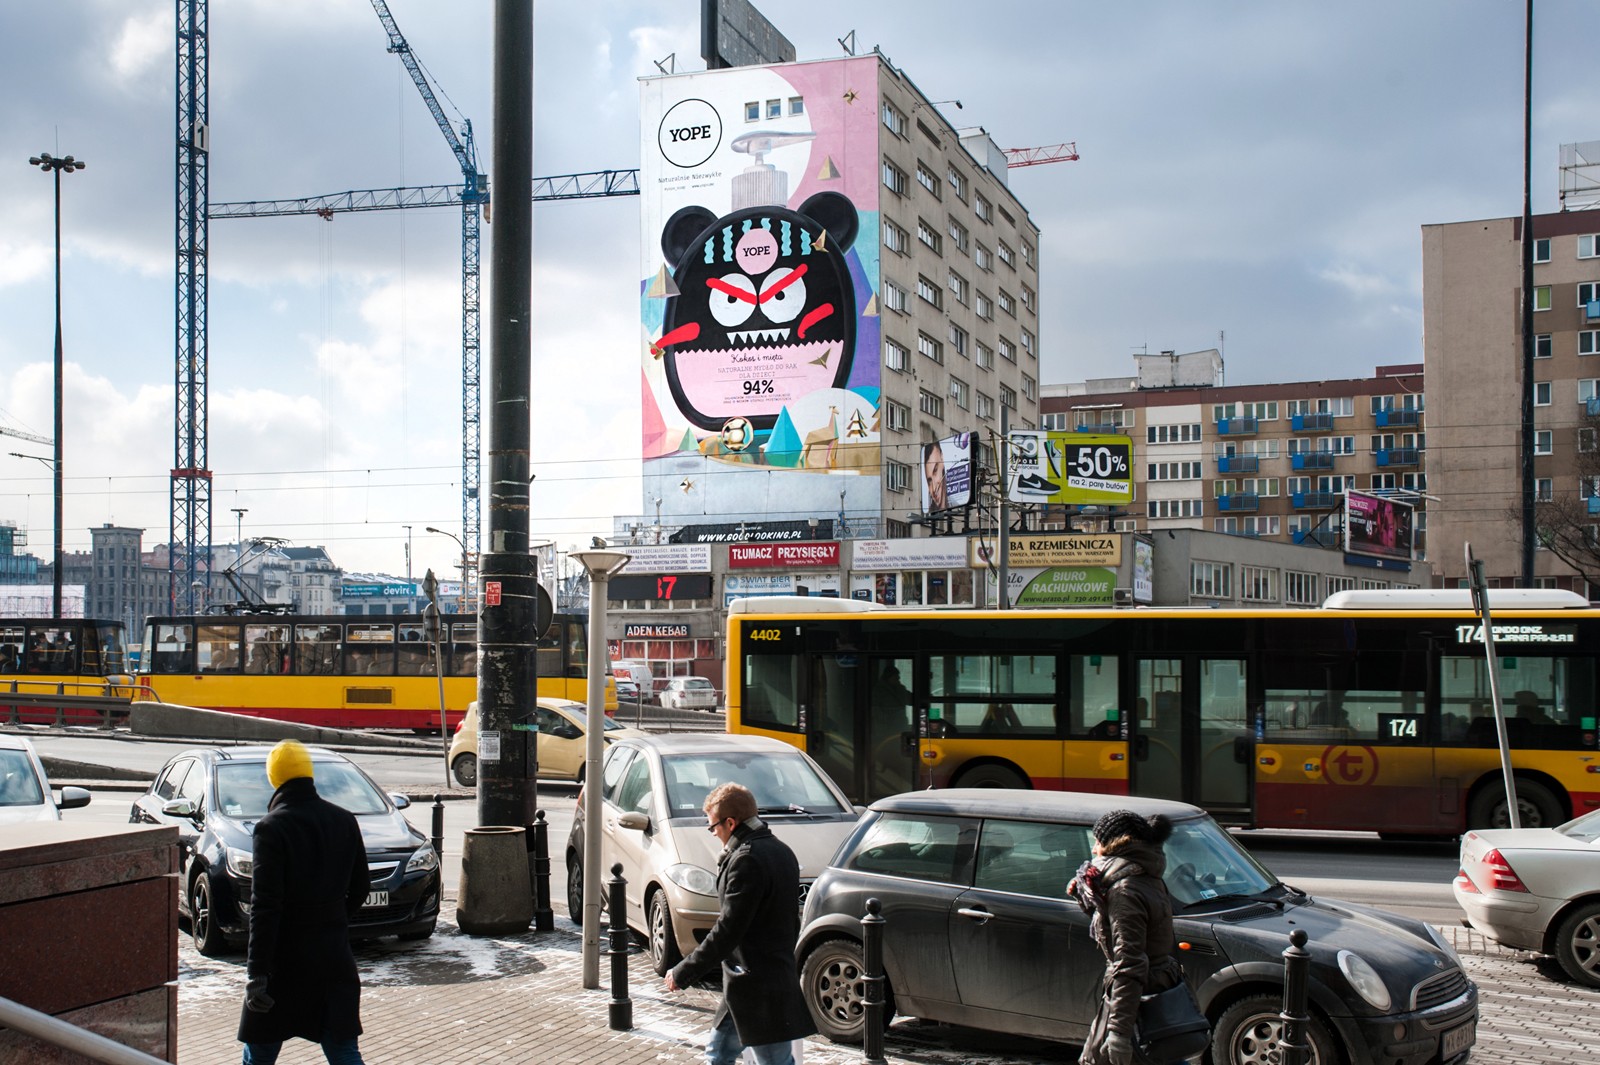 Mural reklamowy na Chmielnej 98 w Warszawie | YOPE | Portfolio